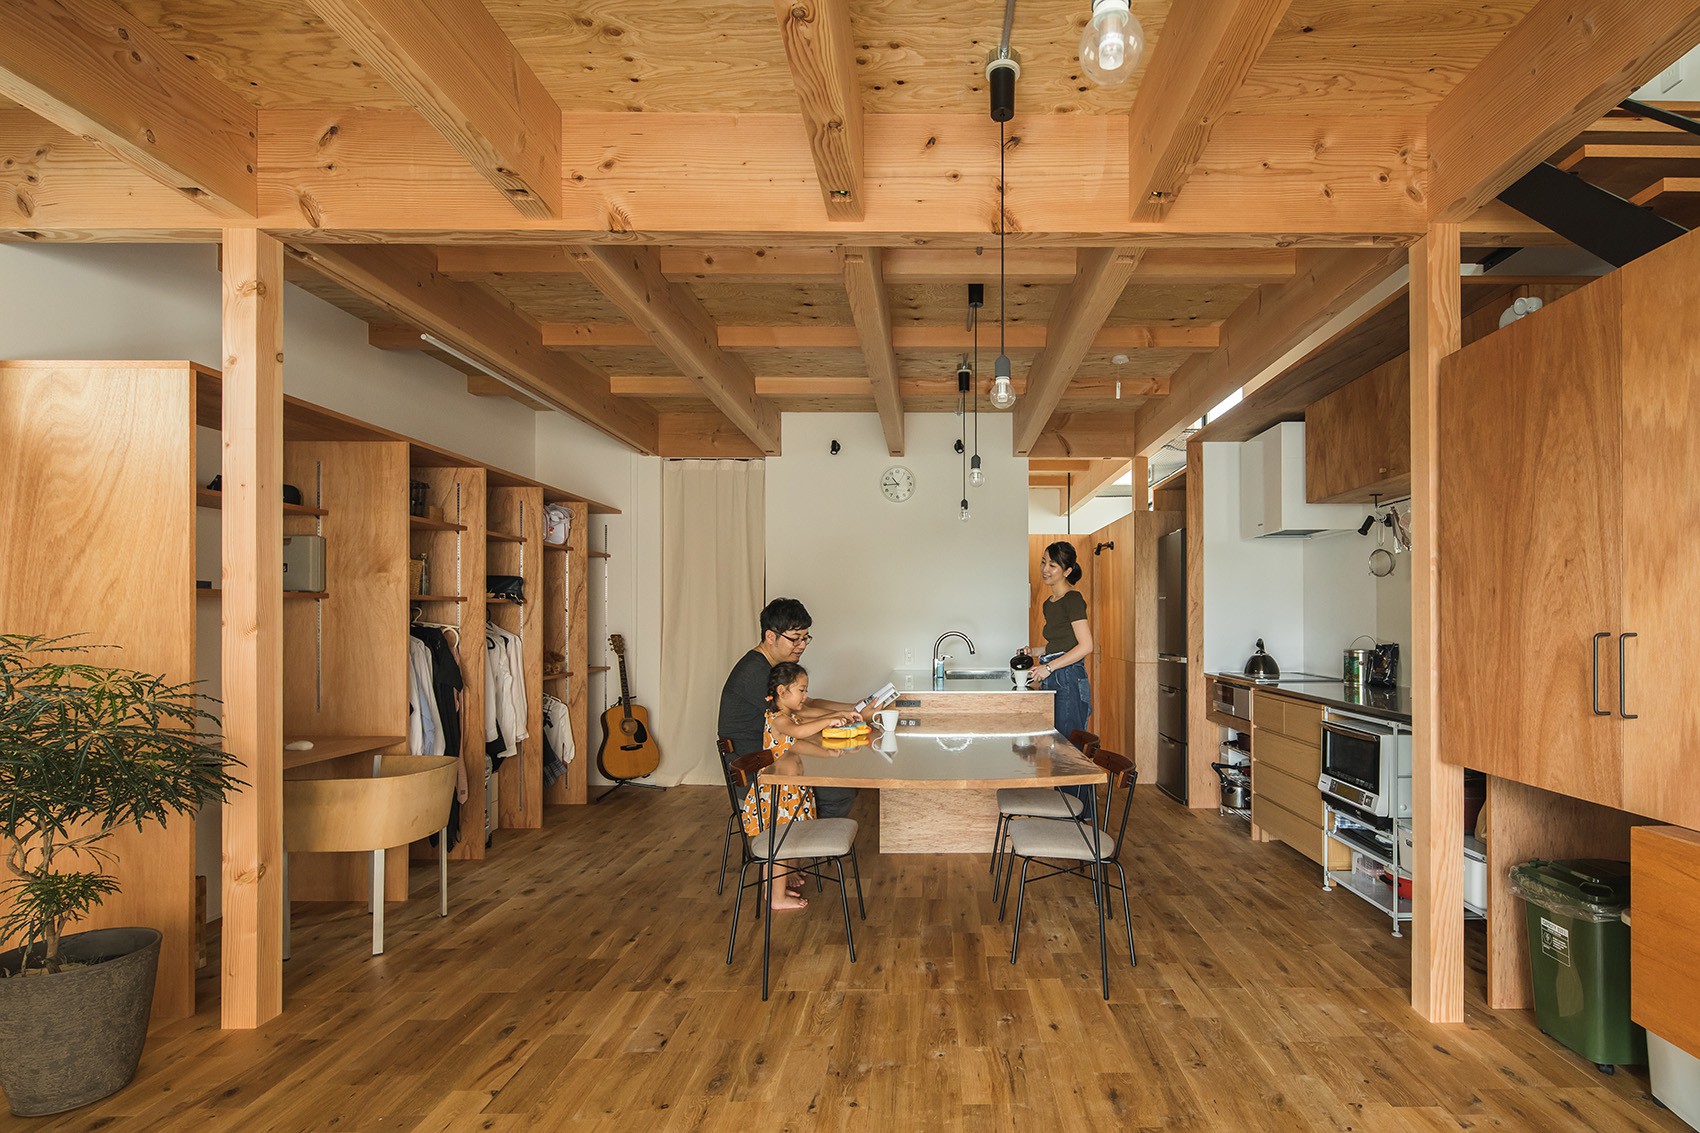 Gia đình có 3 con nhỏ vẫn sống thoải mái trong ngôi nhà phố chật hẹp ở Nhật nhờ thiết kế thông minh - Ảnh 5.